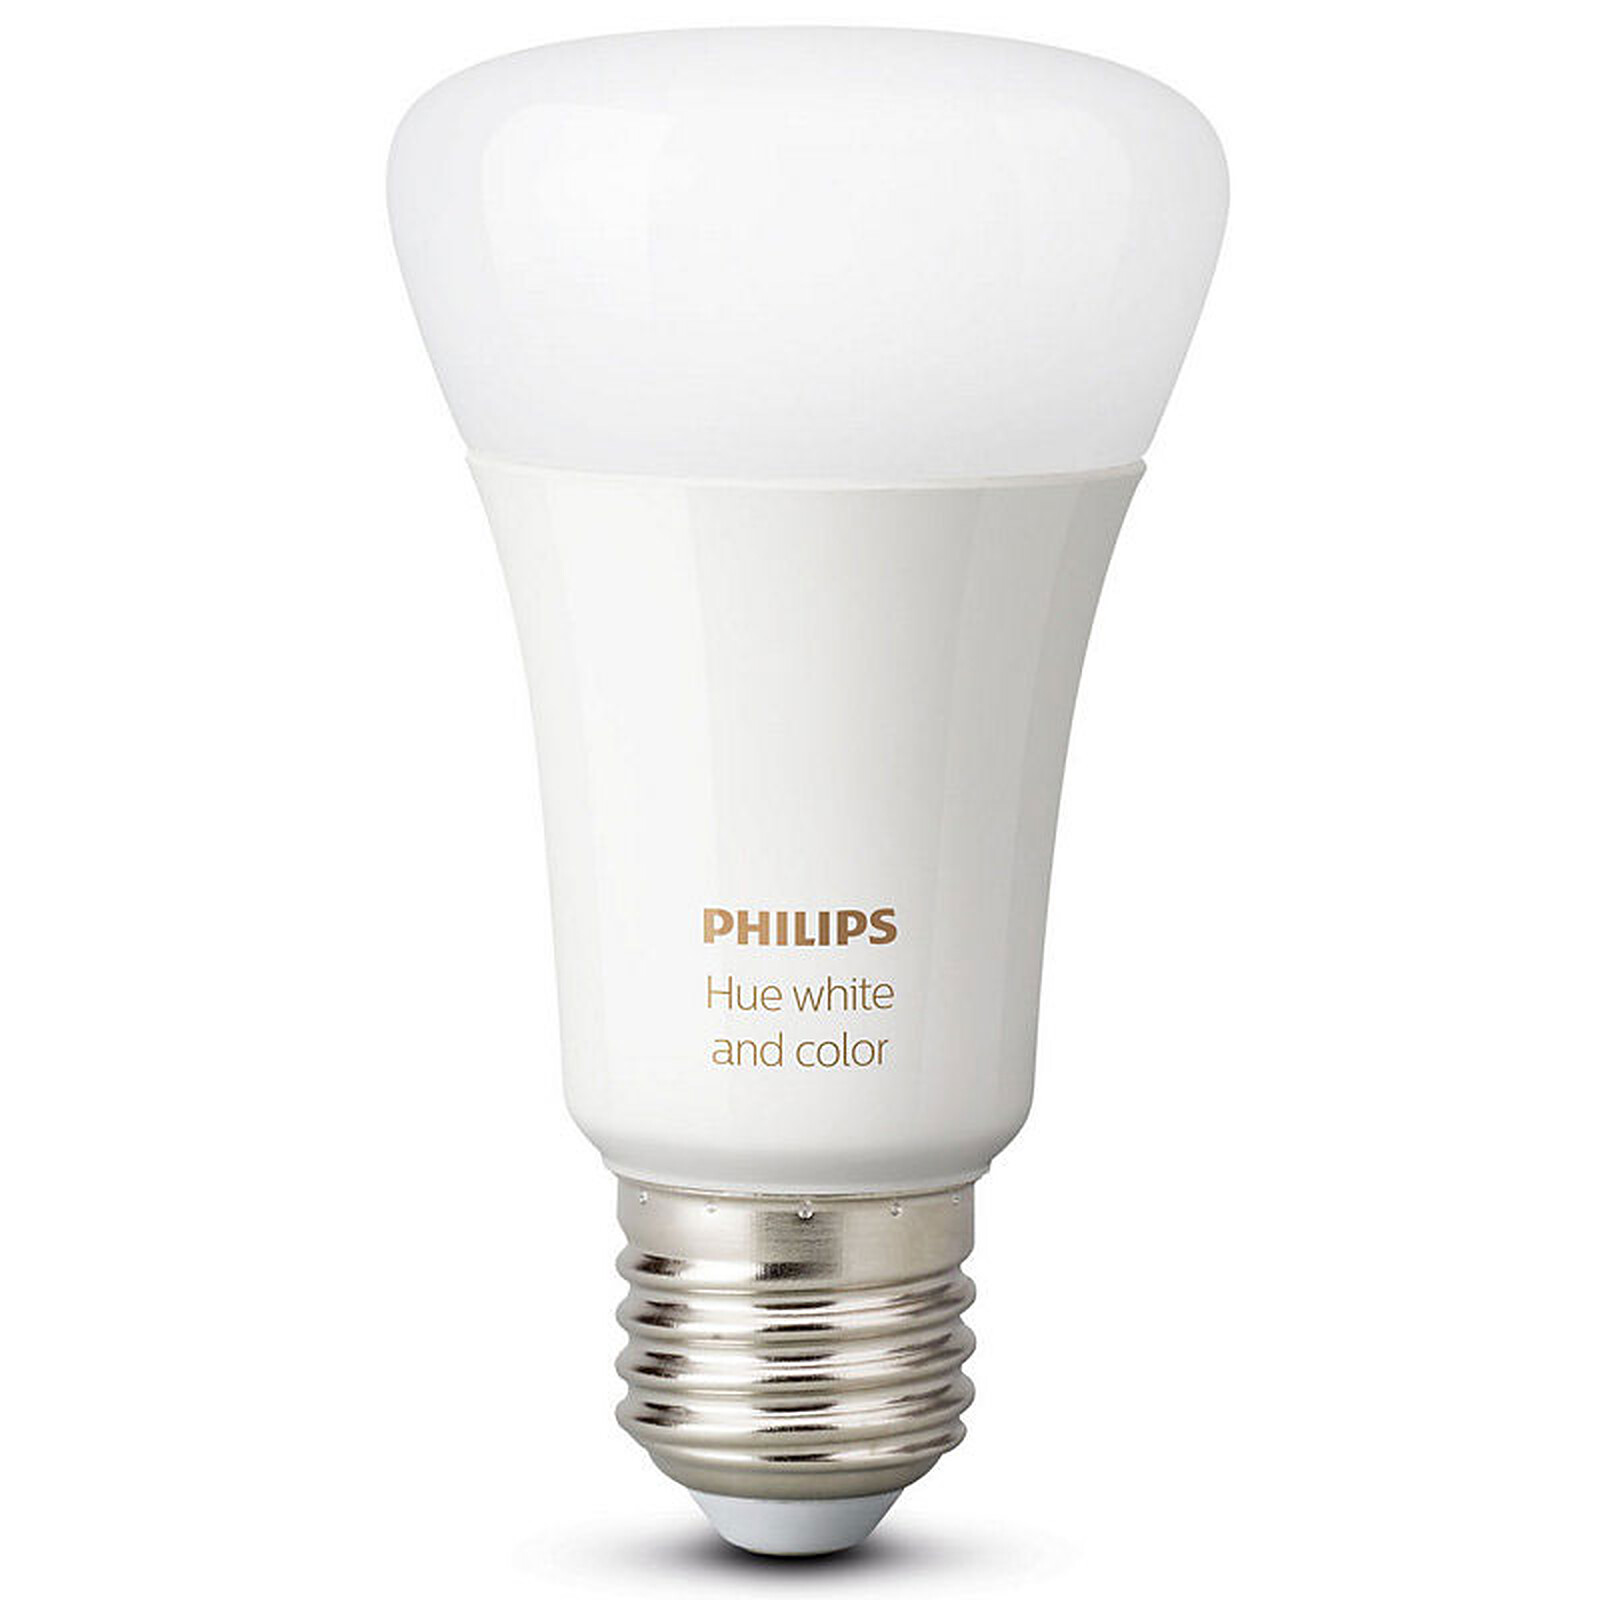 Ampoule Bluetooth LED,2 EN 1 Lampe,Couleurs E27 Enceinte Musique